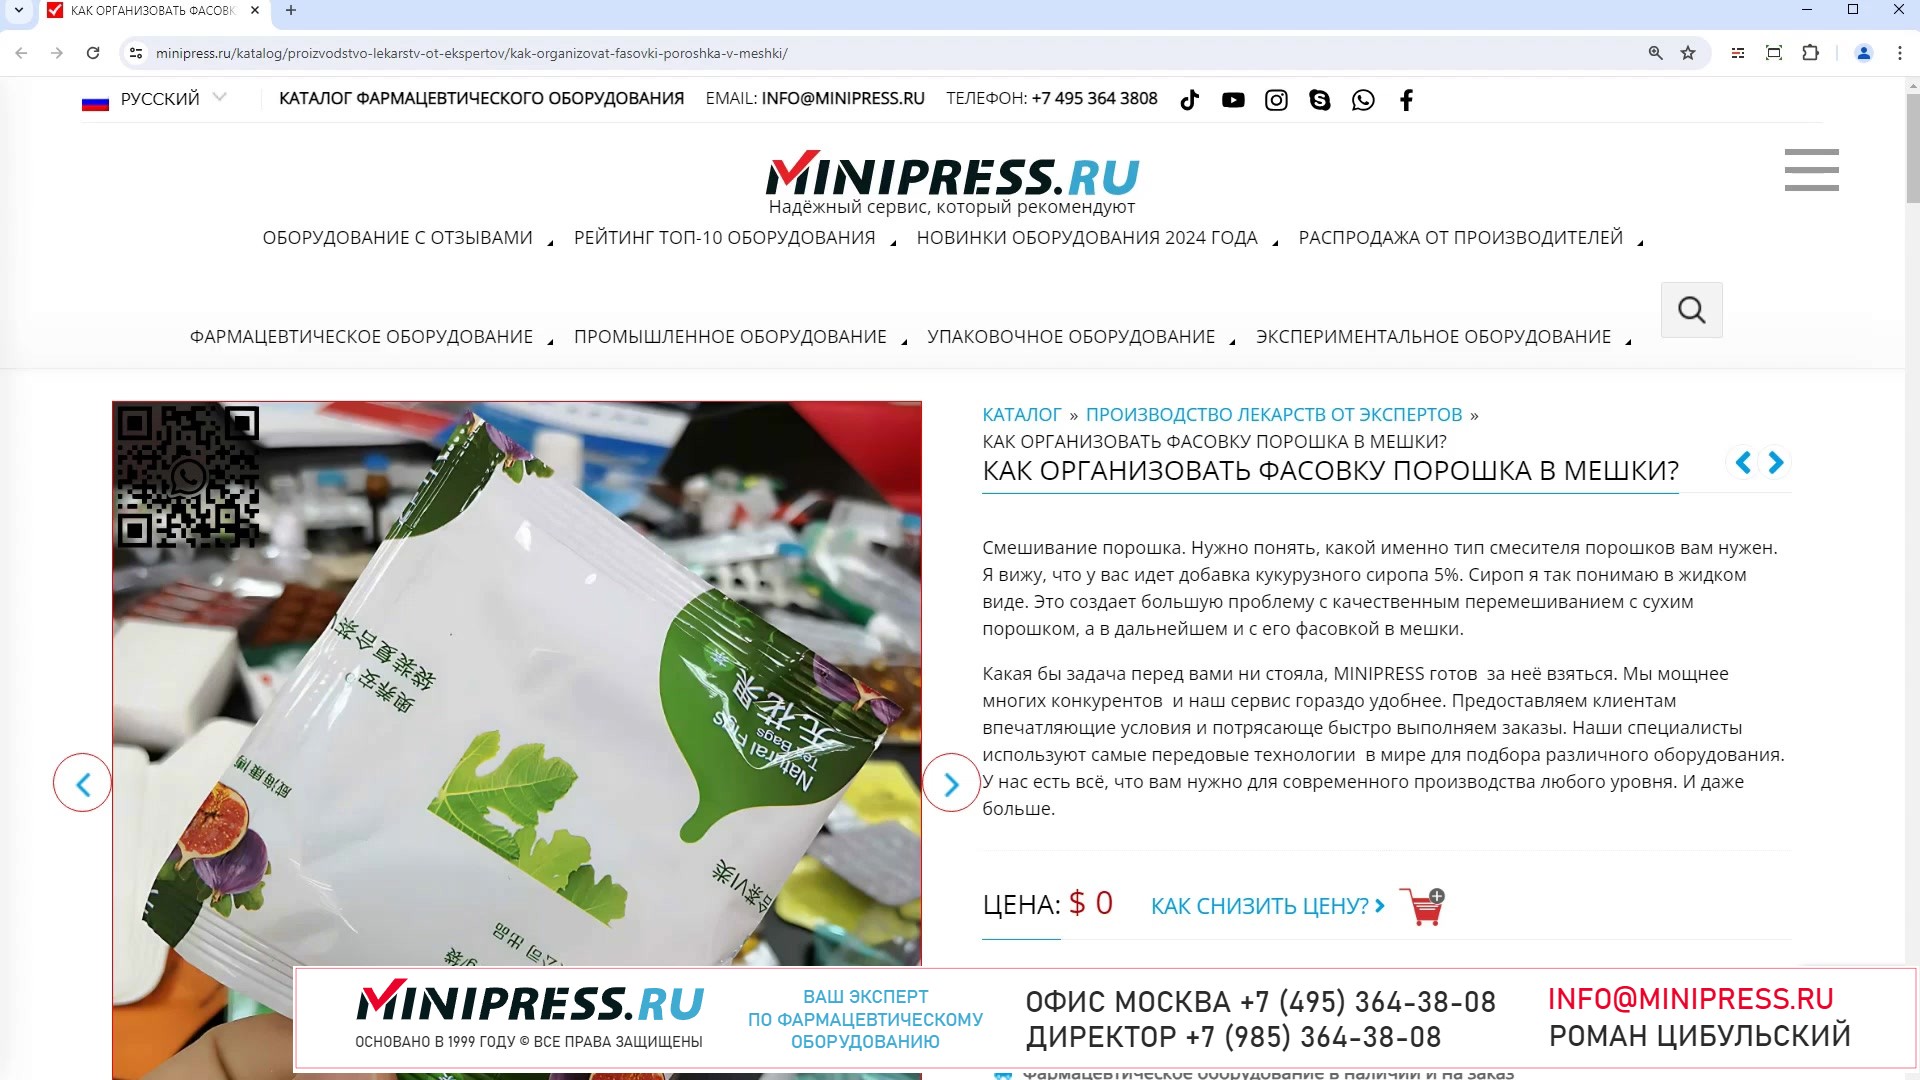 Minipress.ru Как организовать фасовку порошка в мешки